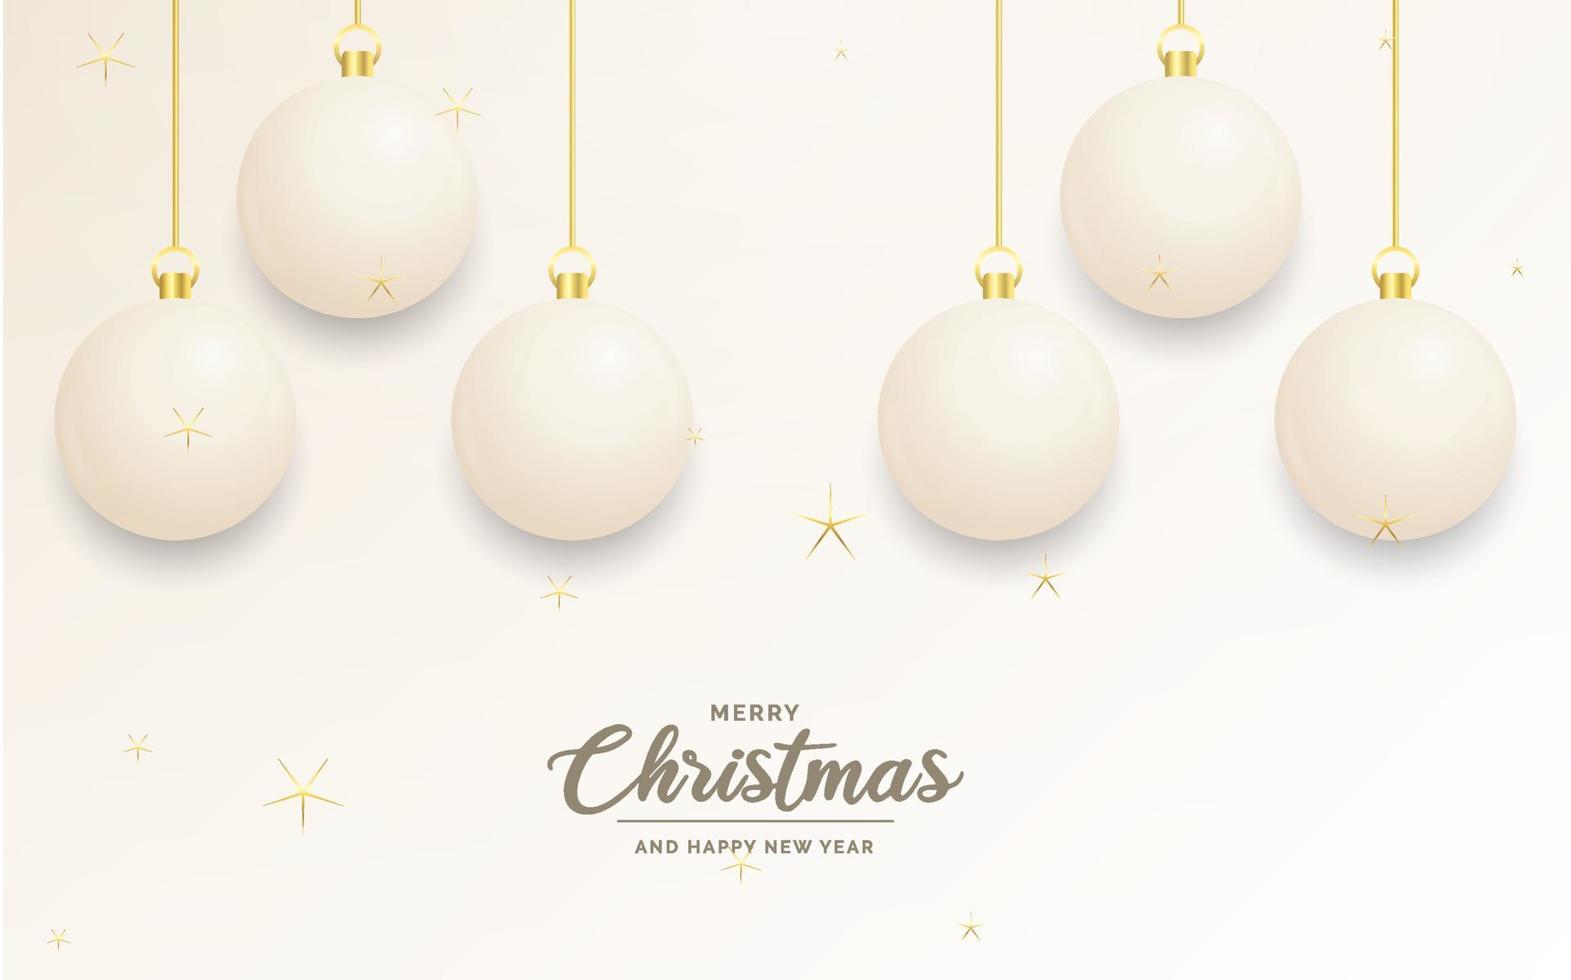 festliche weihnachtsdekoration weiße und goldene weihnachtskugeln für website. soziale Netzwerke. Blog oder Ihren Videokanal vektor